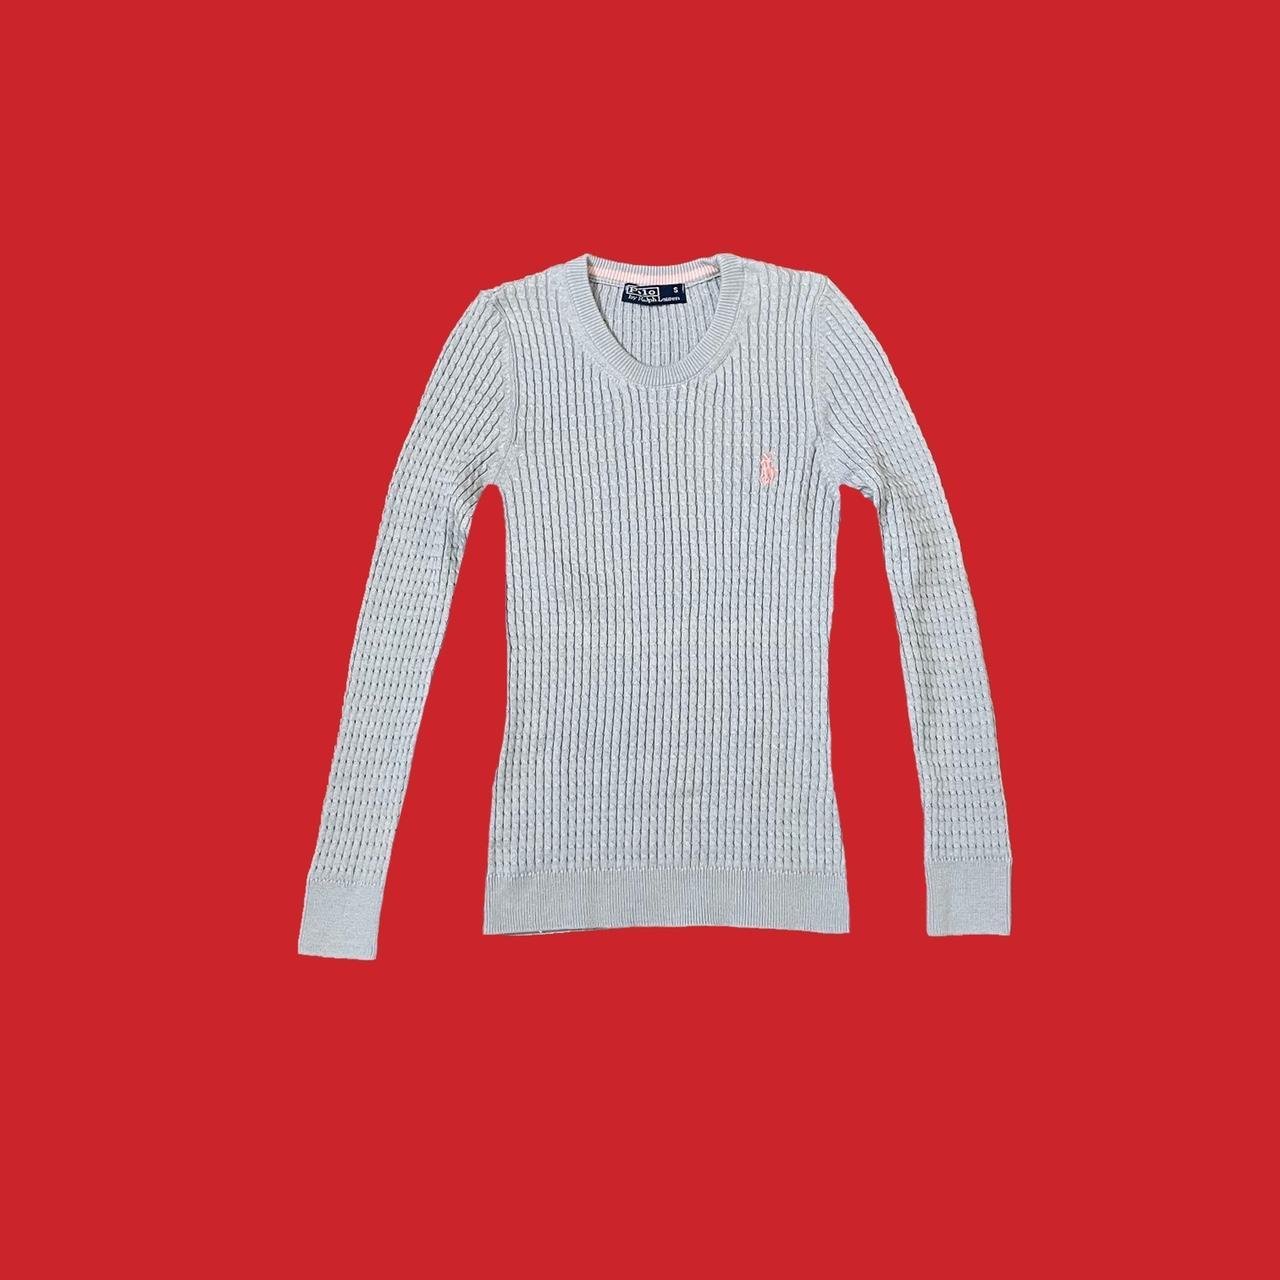 Ralph Lauren Sport Pink Knit V Neck Sweater Women's Size Medium